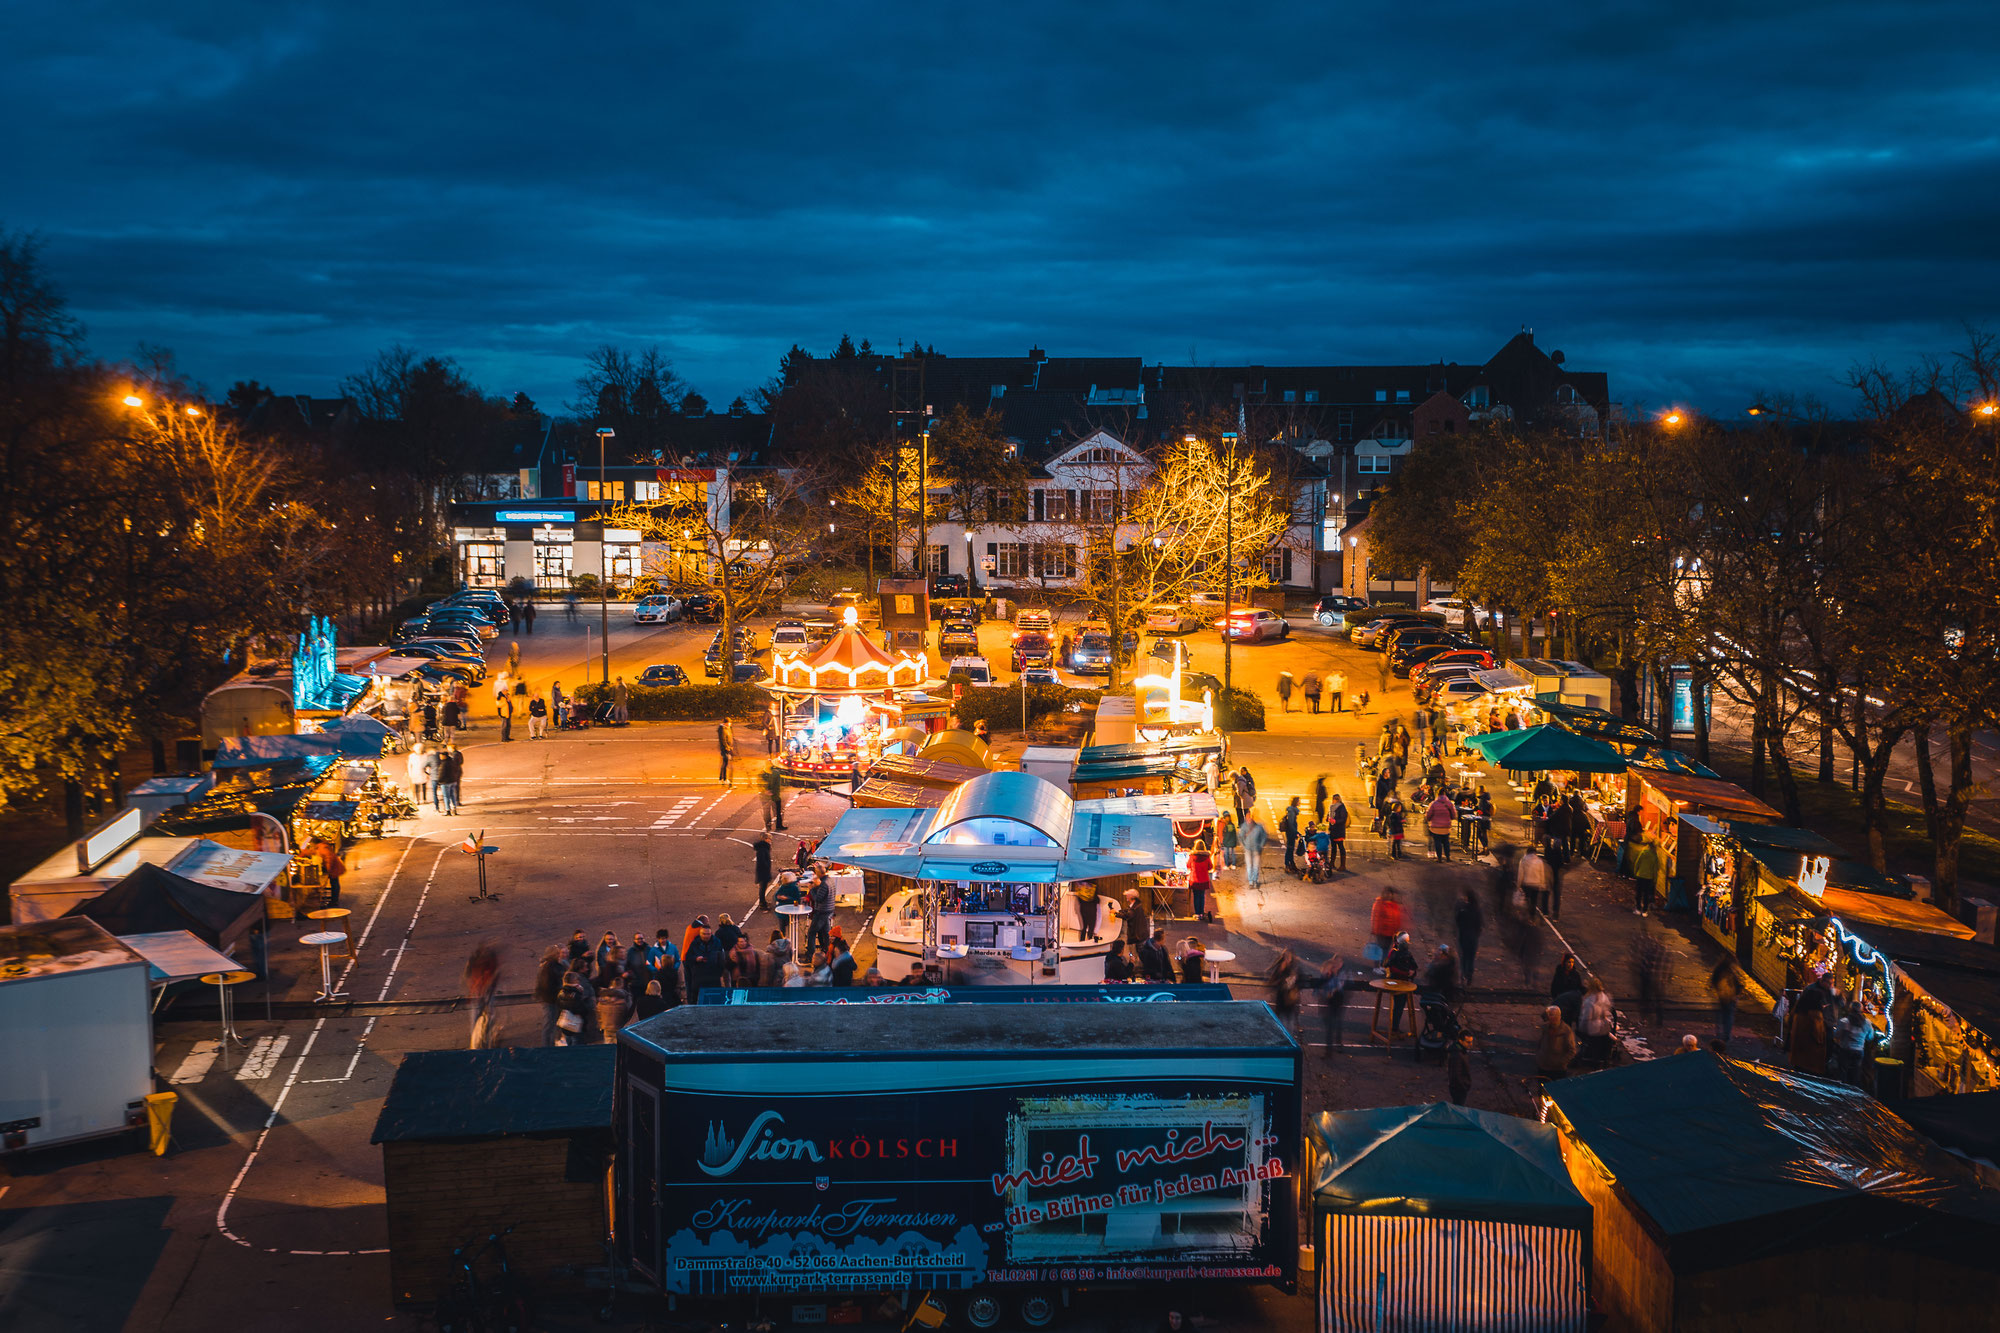 Der Weihnachtsmarkt in Bardenberg